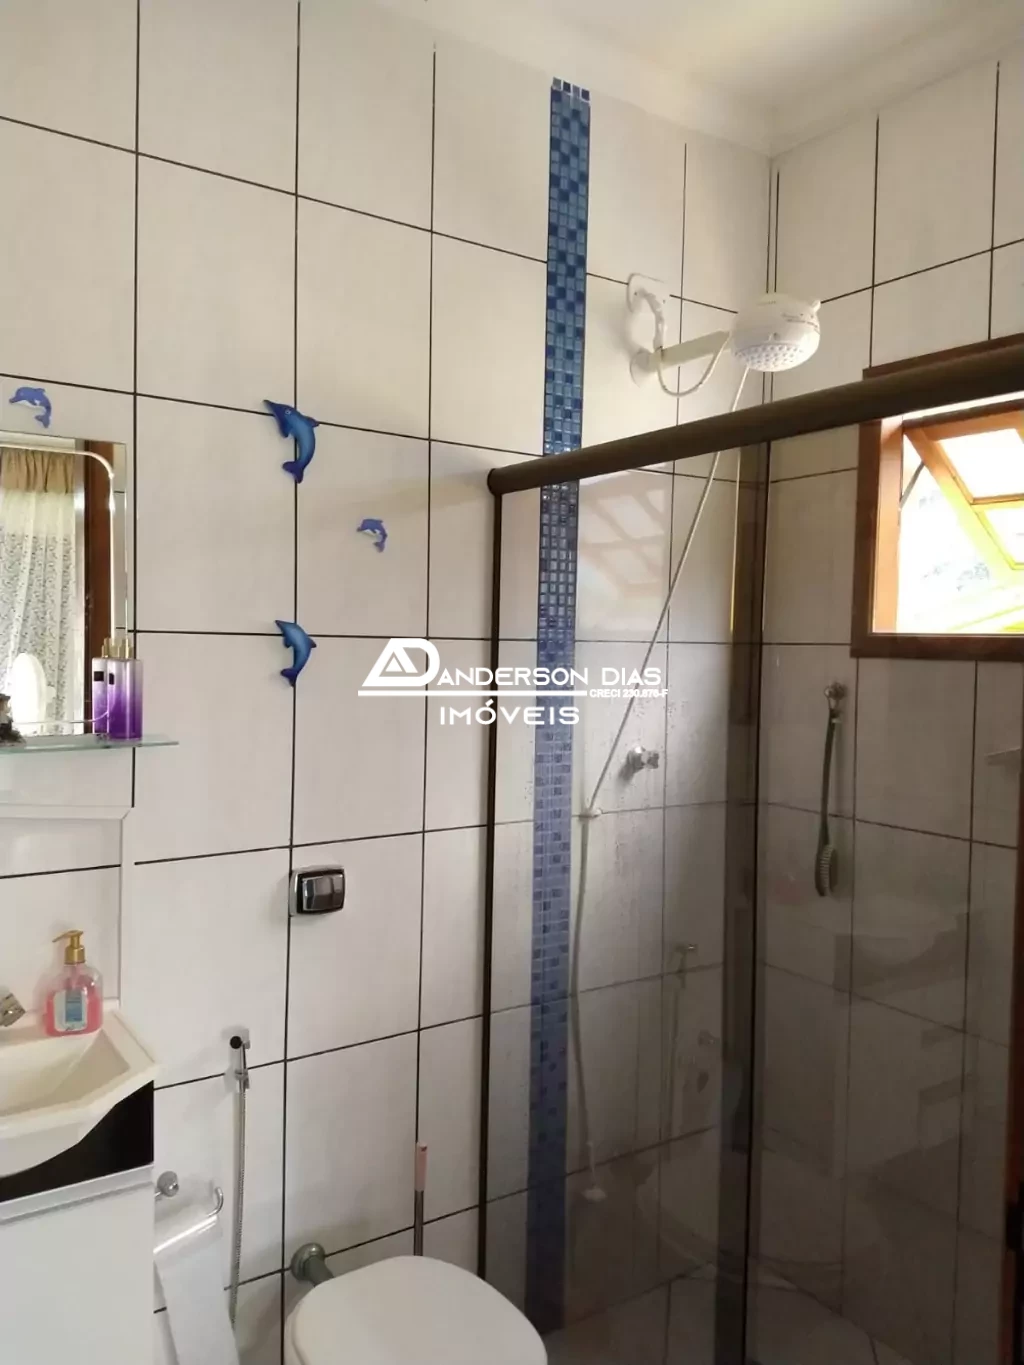 Sobrado com 3 dormitórios à venda, 250² por R$ 530.000 - Massaguaçu - Caraguatatuba/SP